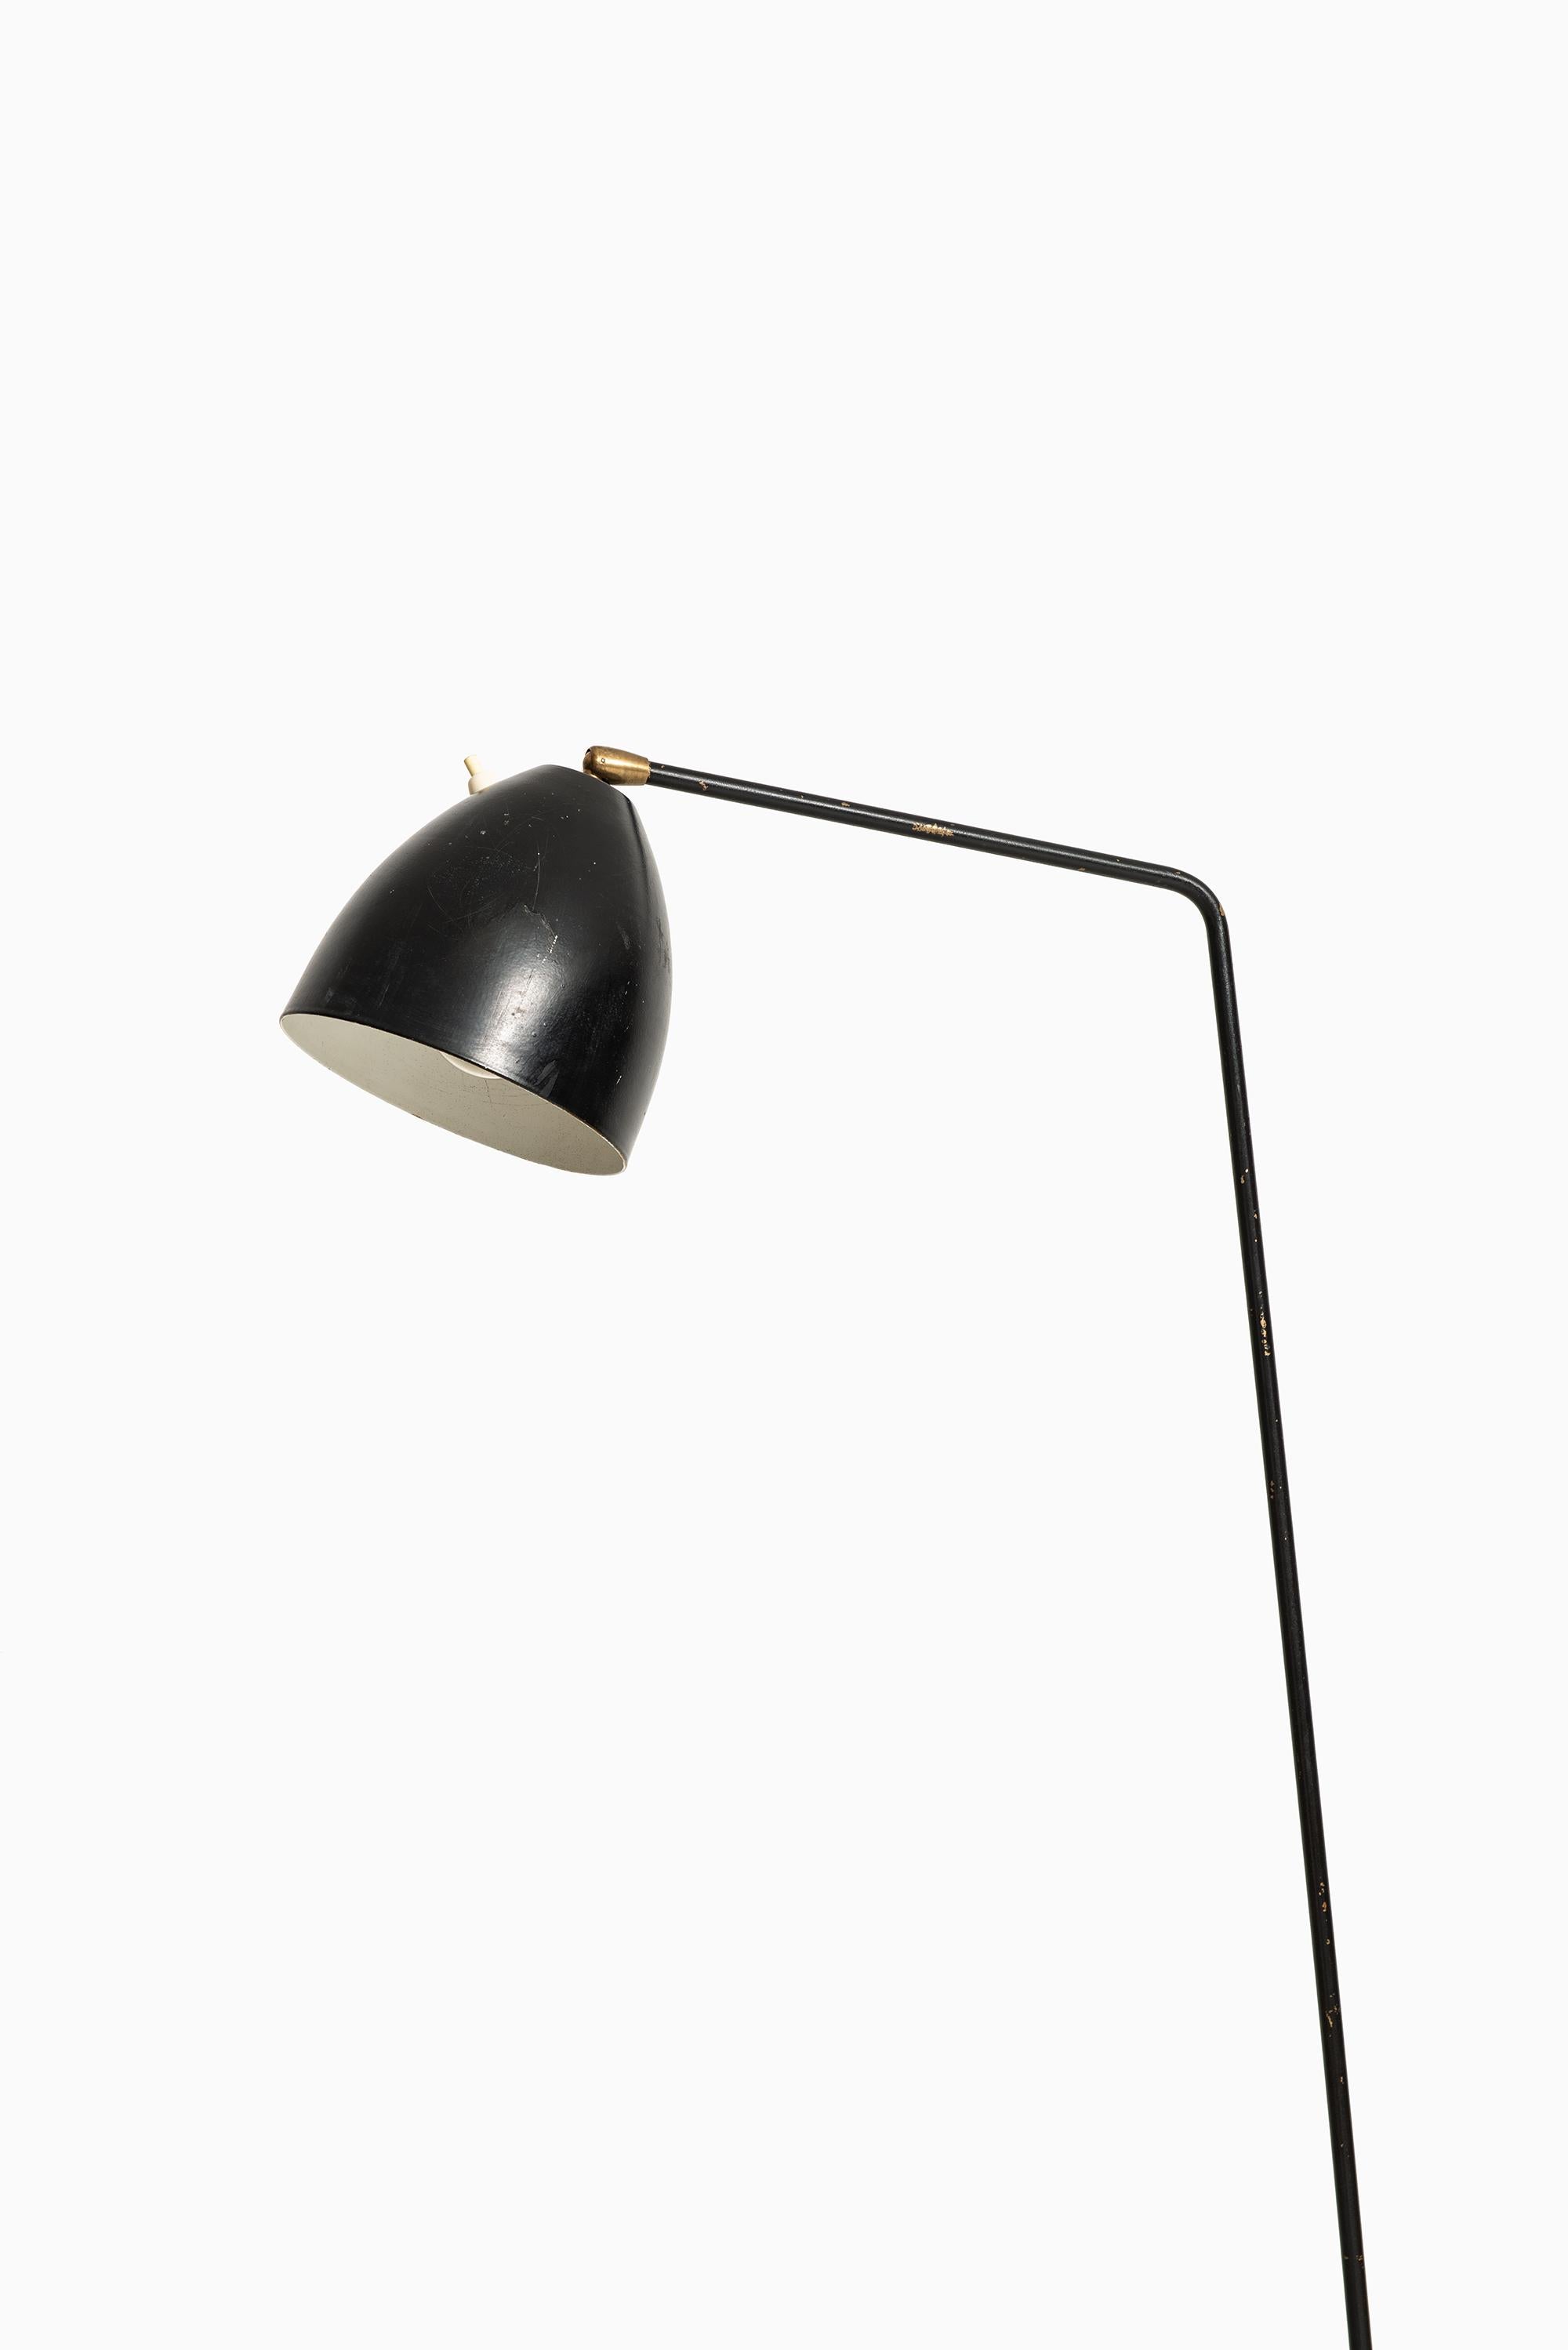 Seltene Stehlampe in der Art von Greta Magnusson-Grossman. Wahrscheinlich von Bergbom in Schweden hergestellt.